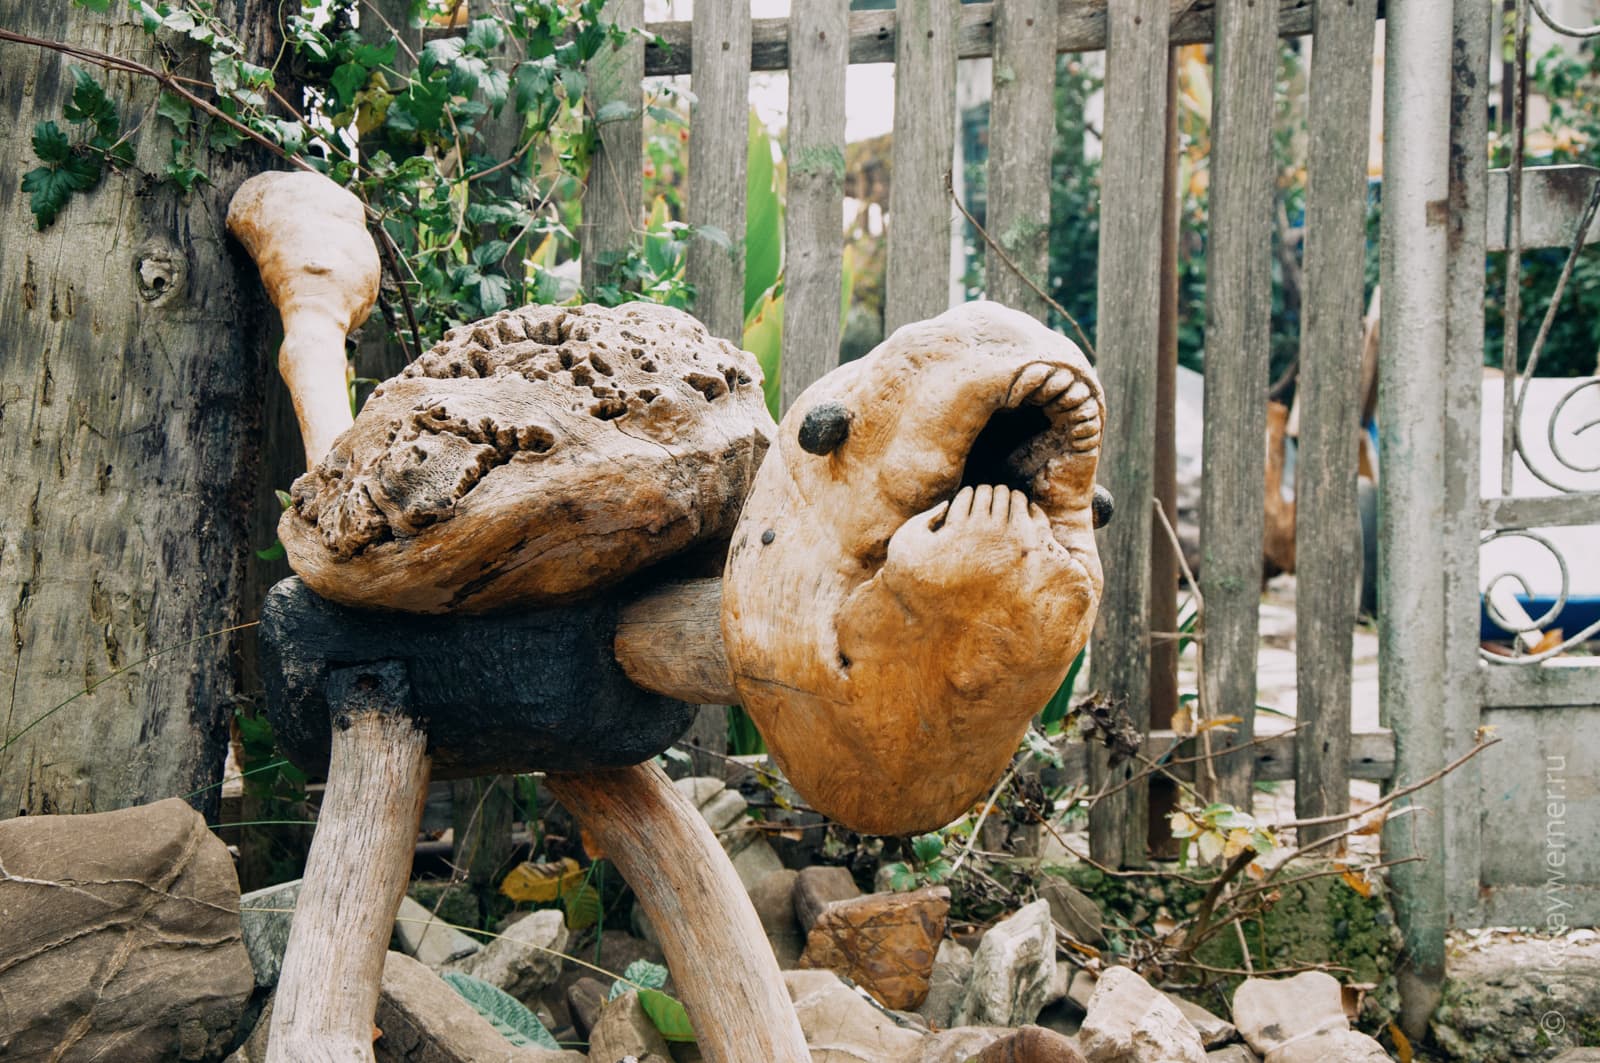 Конструкция из палок и прочего лесного мусора, напоминающая динозавра, стоит у деревянного забора.